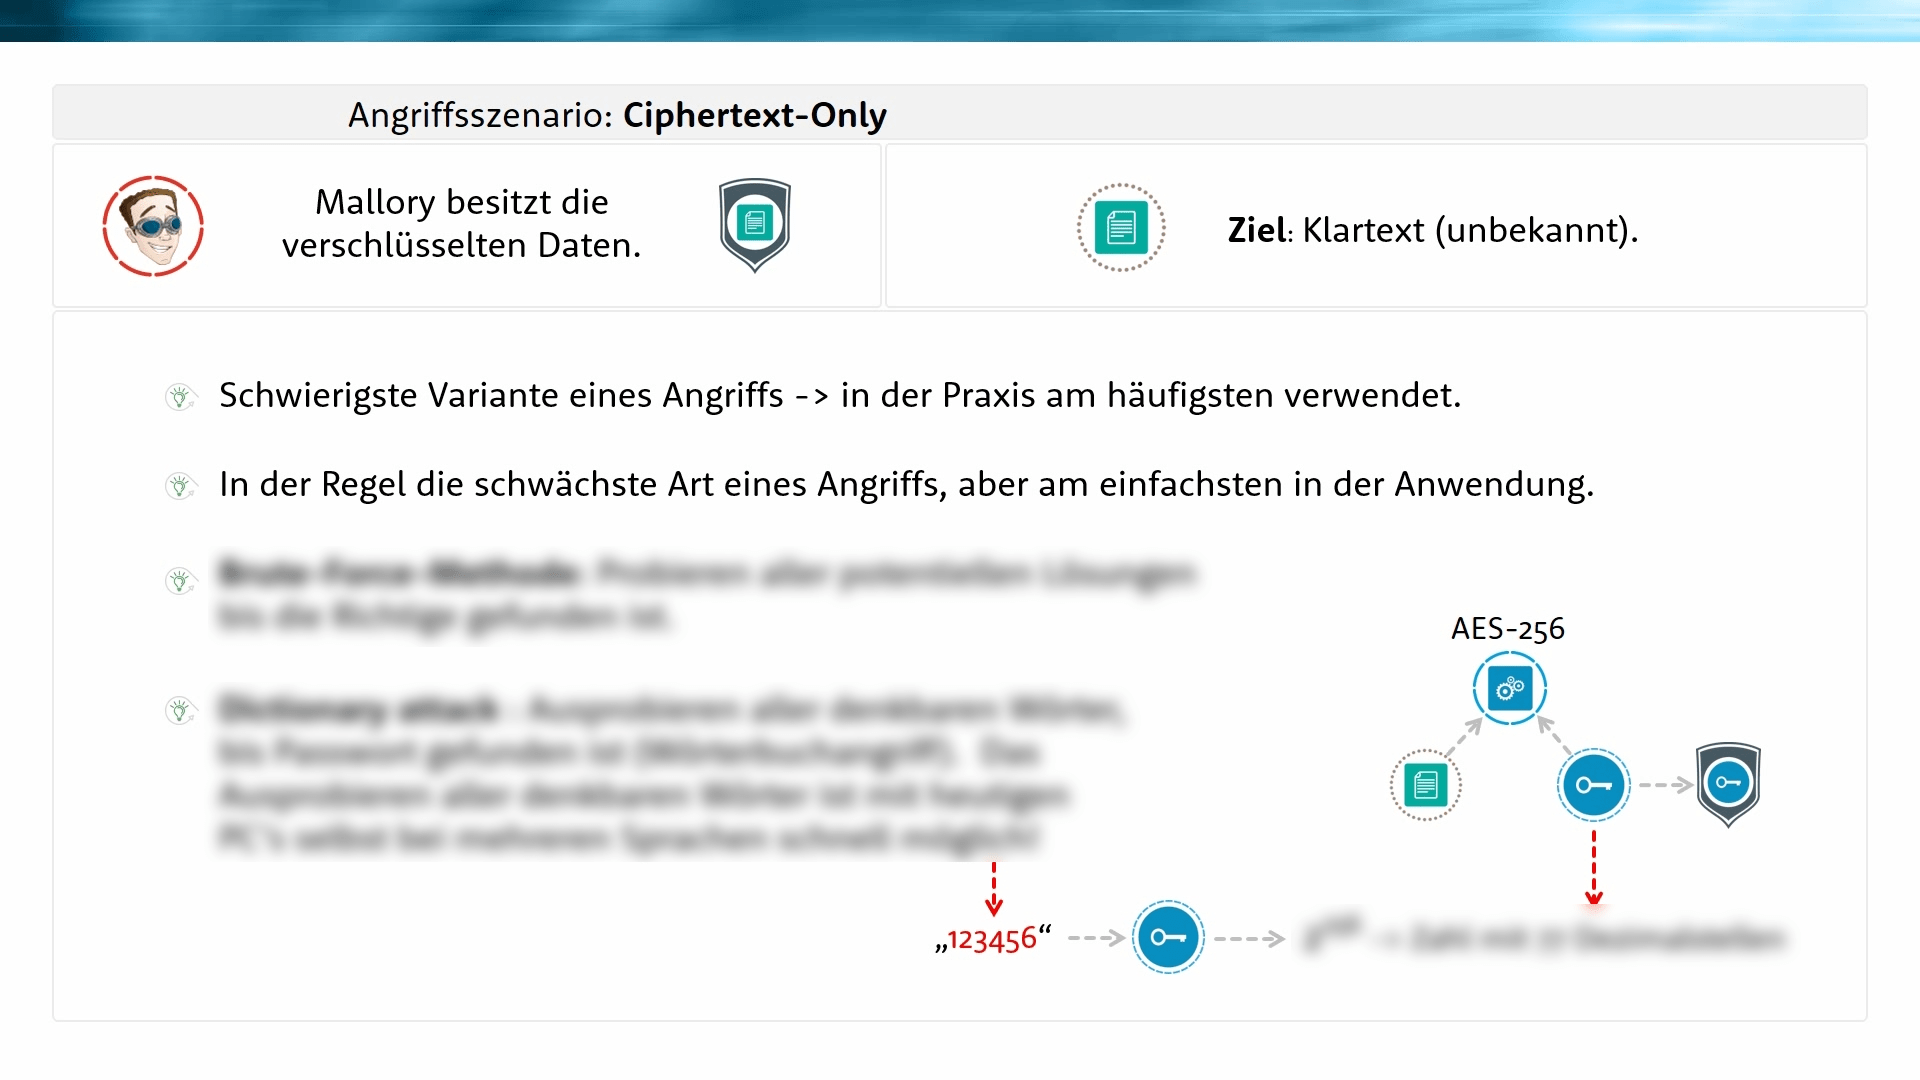 Angriffsszenarien - Ciphertext only